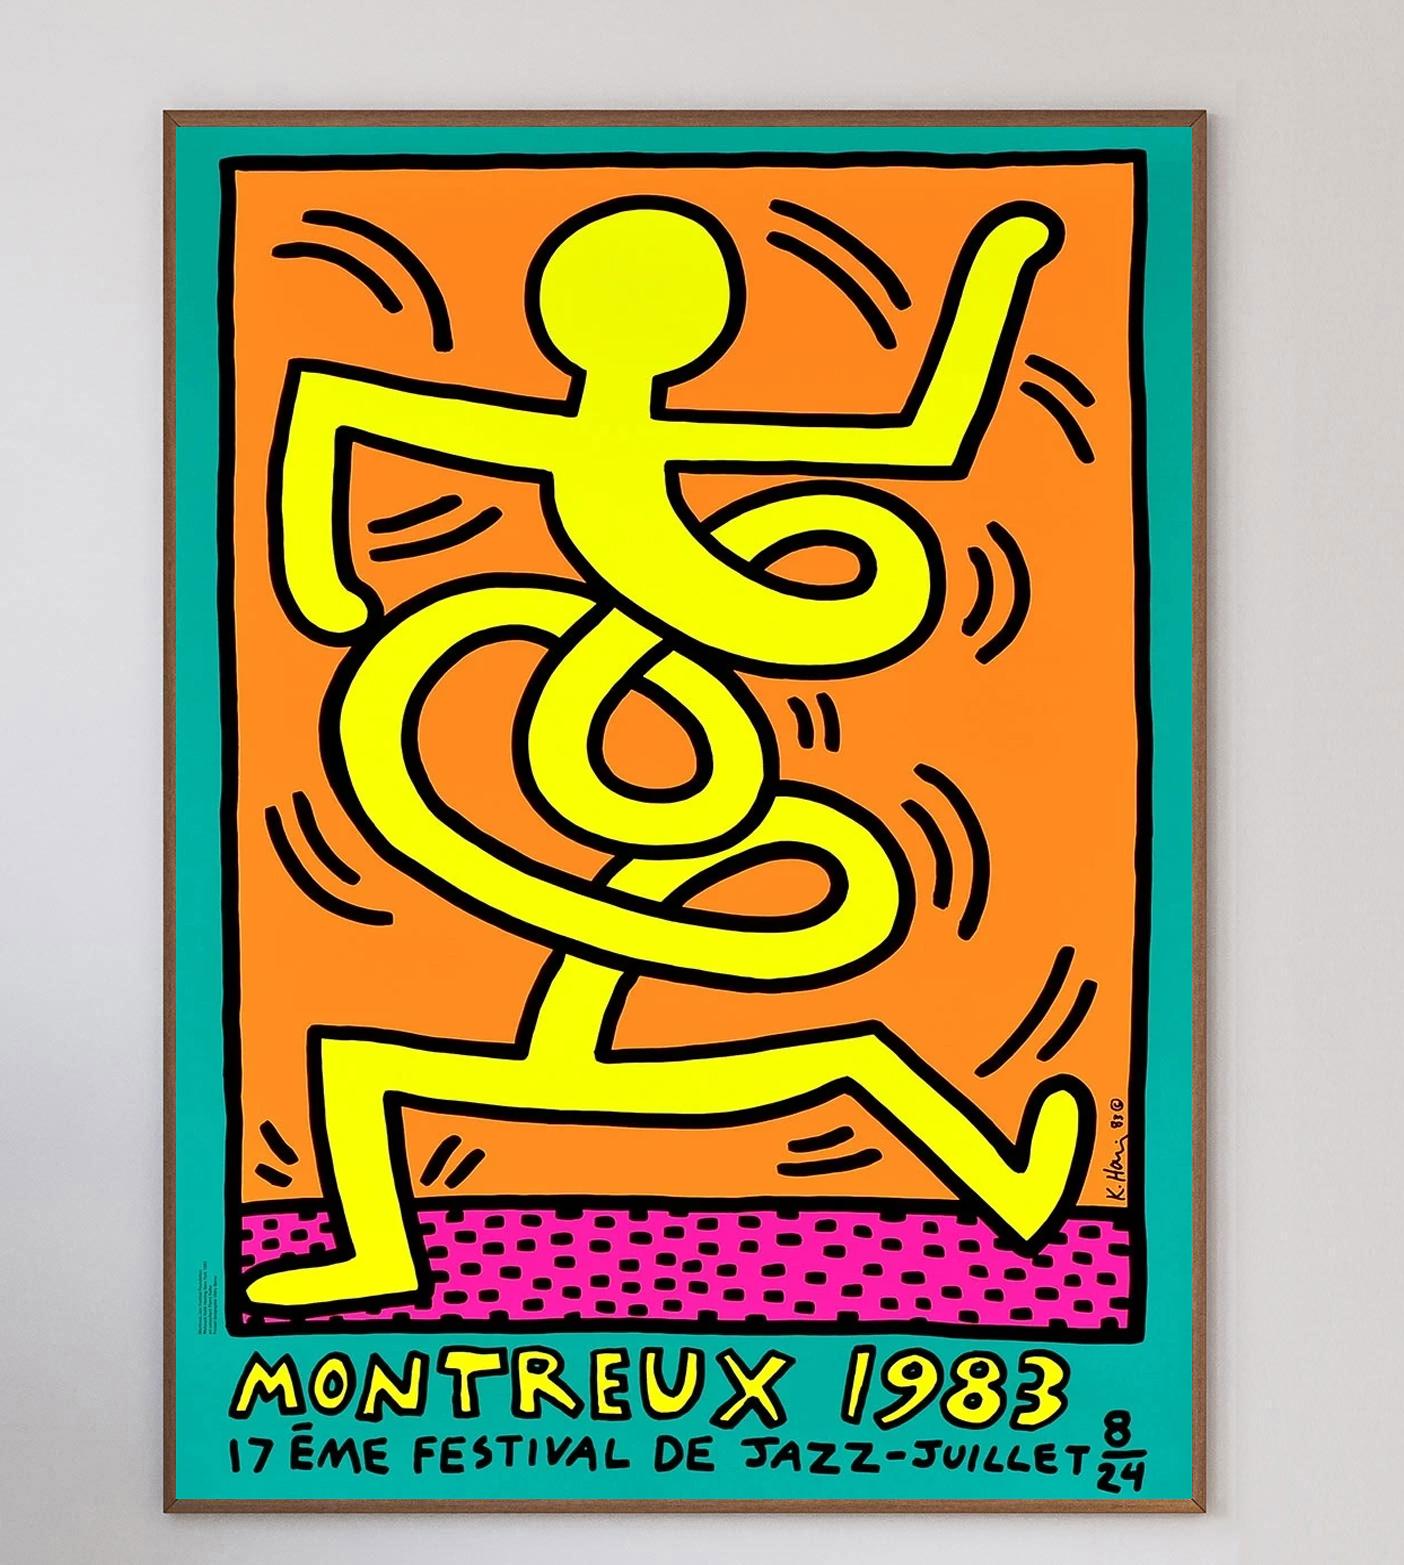 1983 wurde Keith Haring gebeten, ein Plakat für das berühmte Montreux Jazz Festival zu entwerfen. Er reichte 3 Entwürfe ein, die sofort angenommen wurden. Haring besuchte Montreux für die Veranstaltung und verbrachte die gesamte Zeit damit, in den